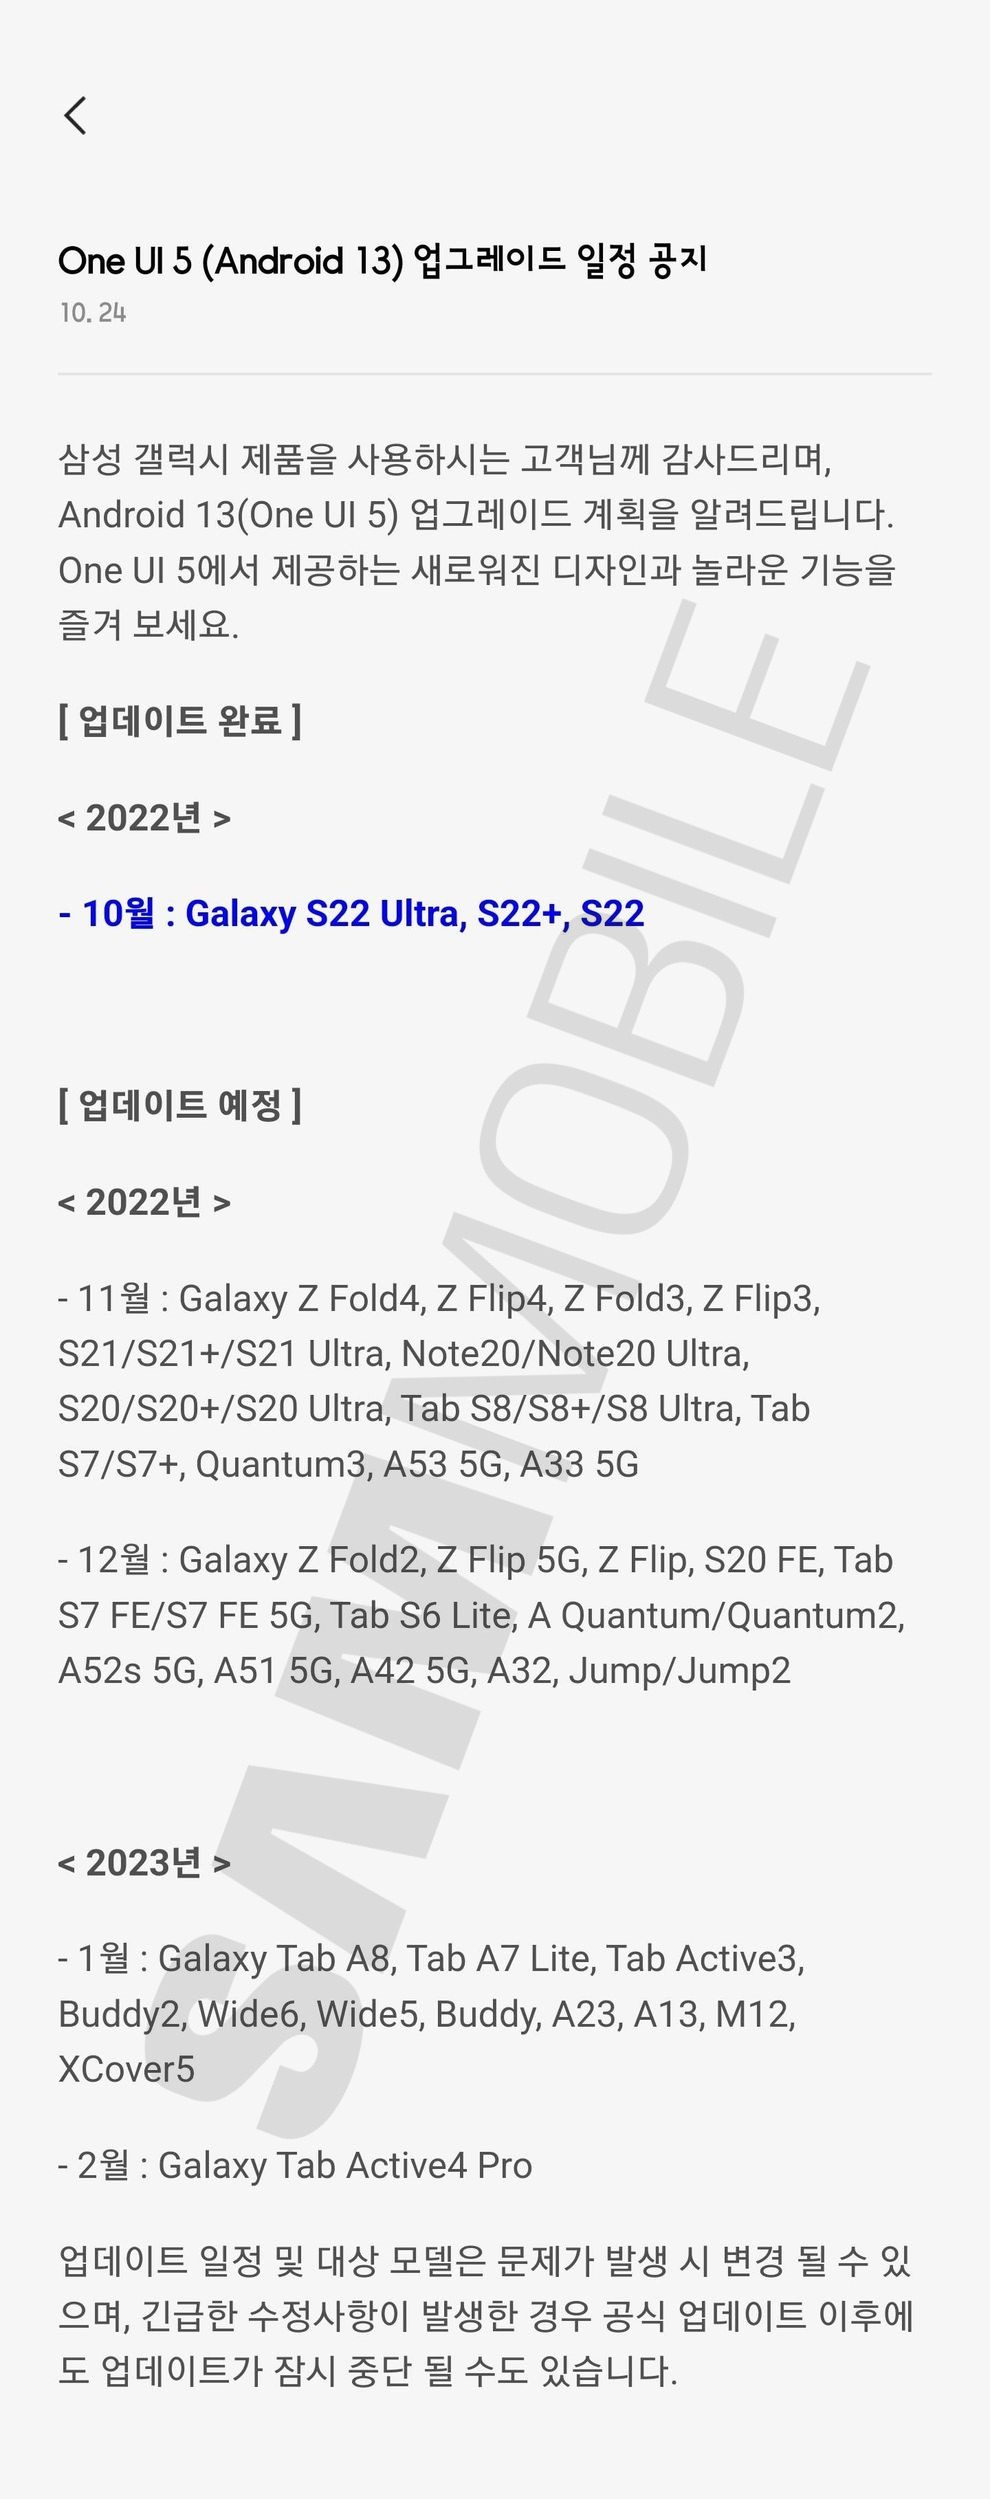 Samsung One UI 5.0 Update Releas